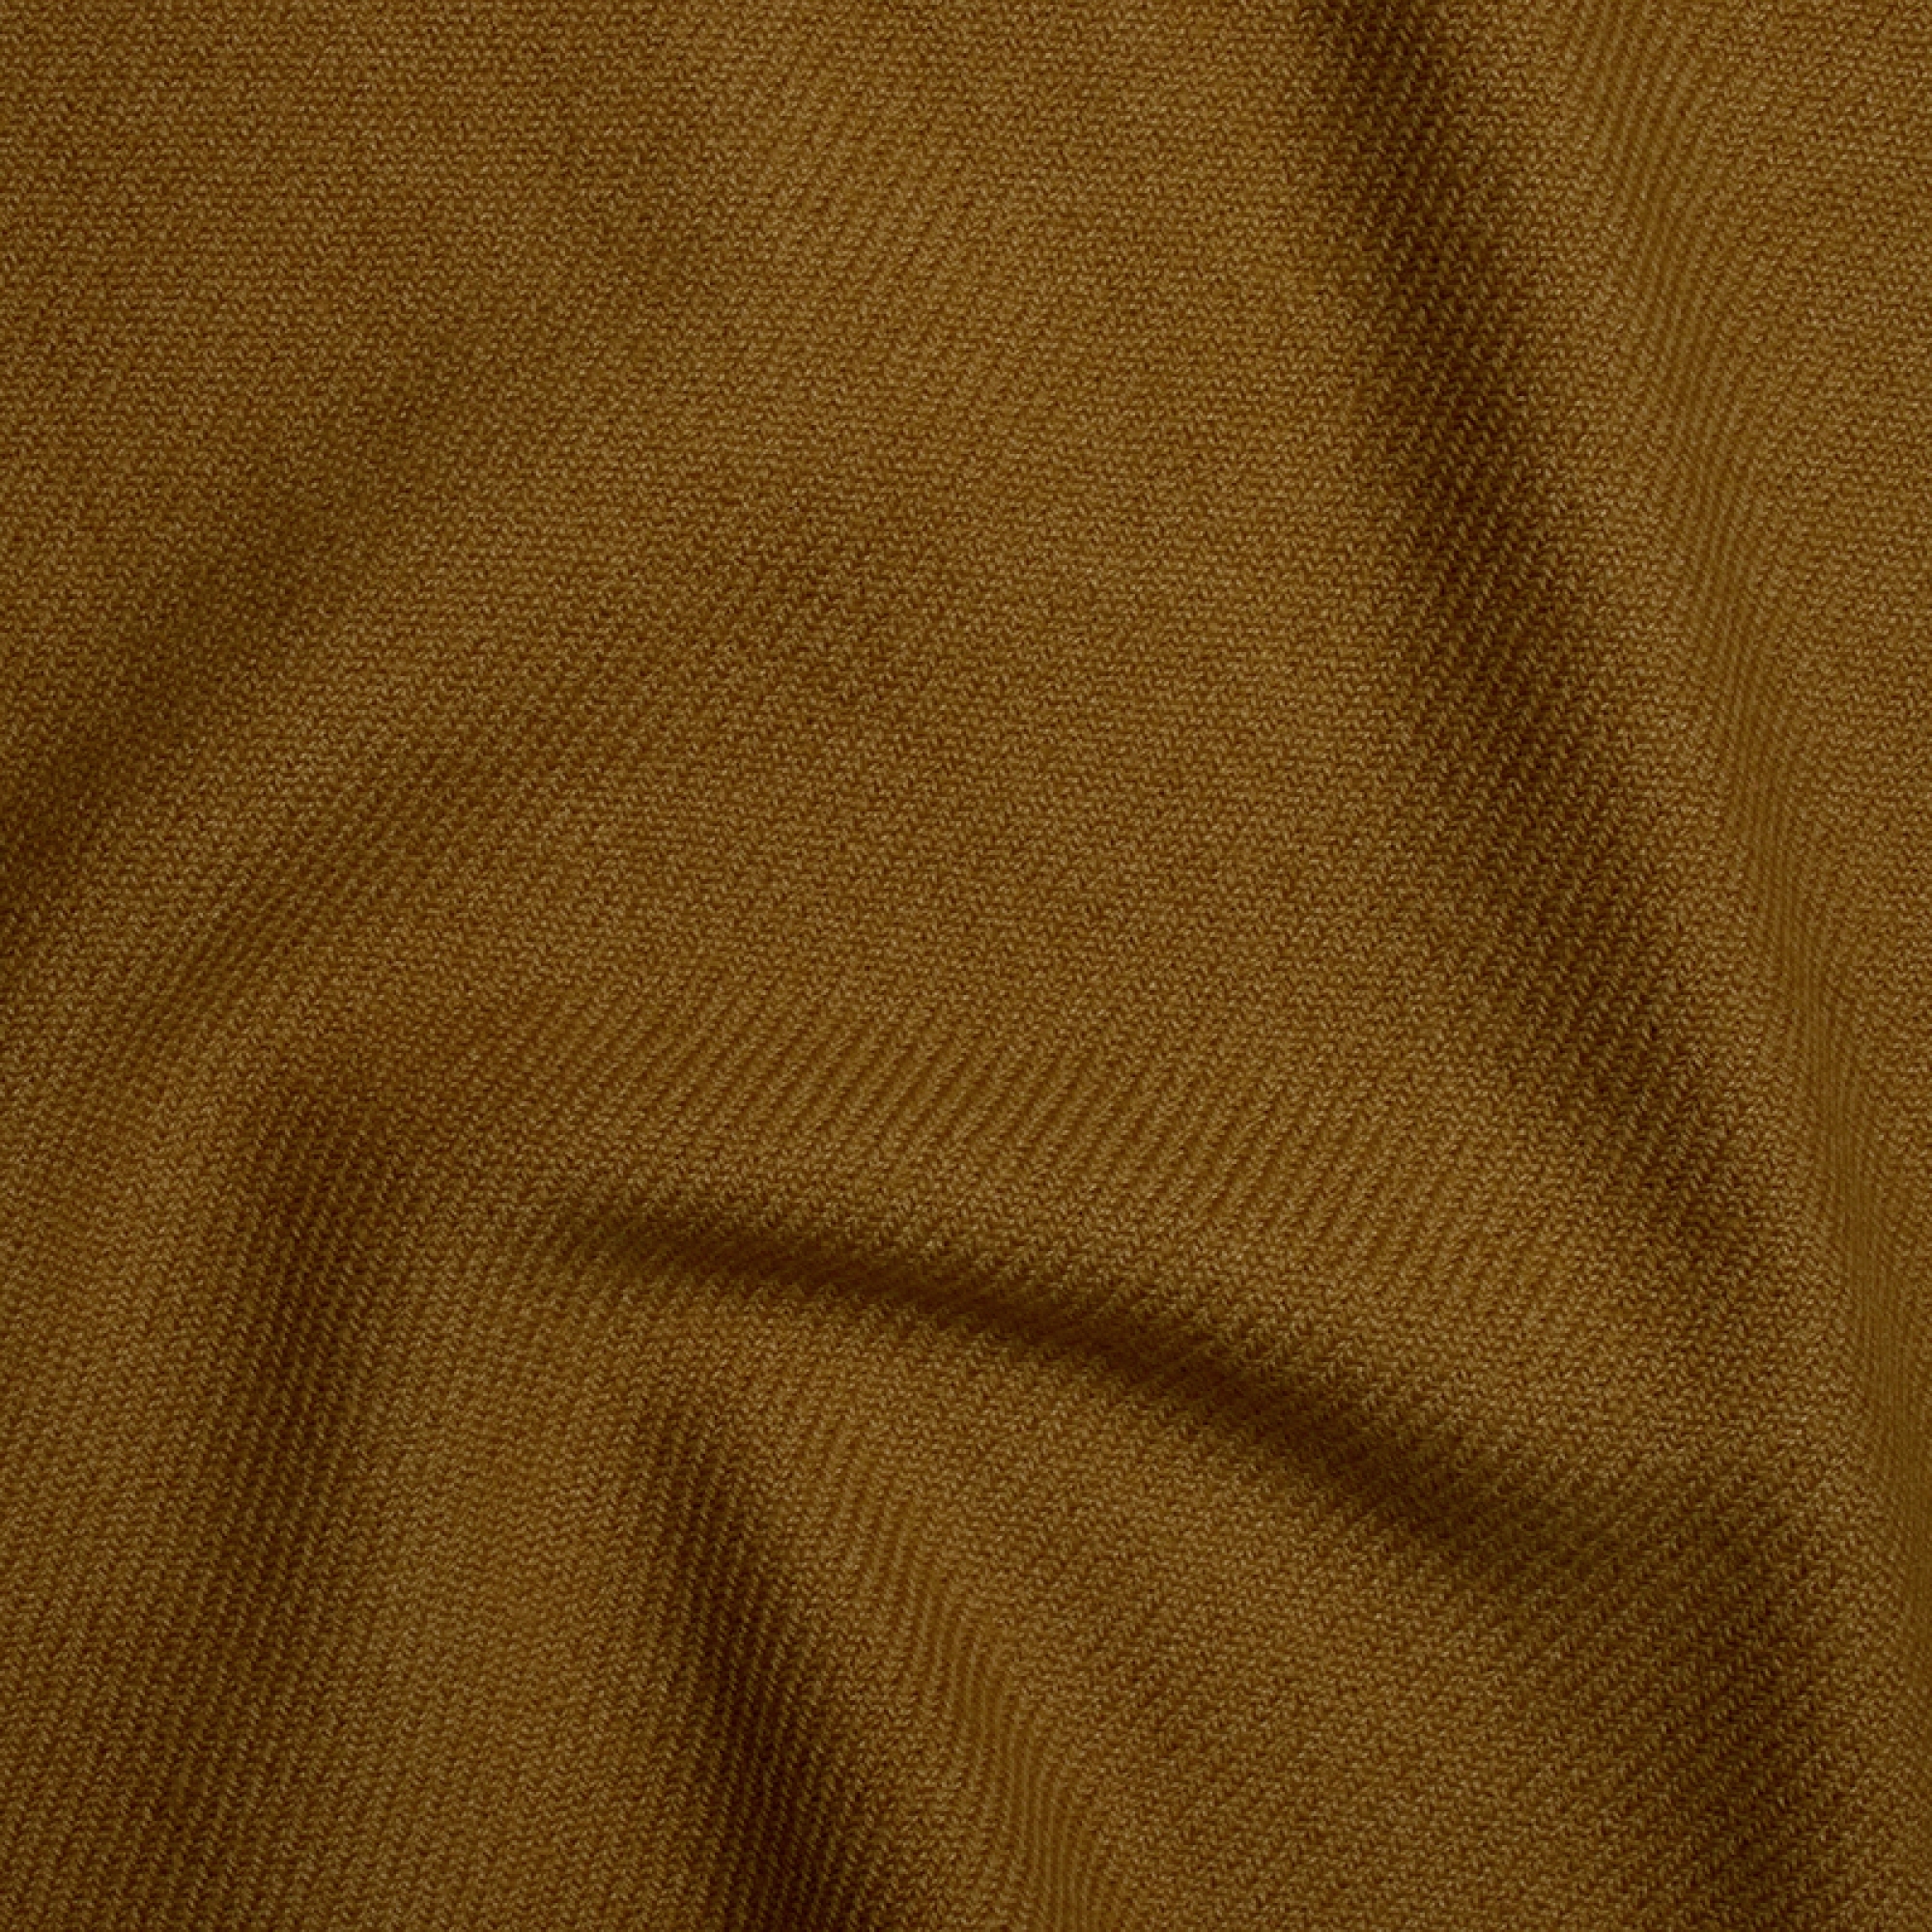 Cashmere accessoires neu toodoo plain s 140 x 200 erdnussbutter 140 x 200 cm